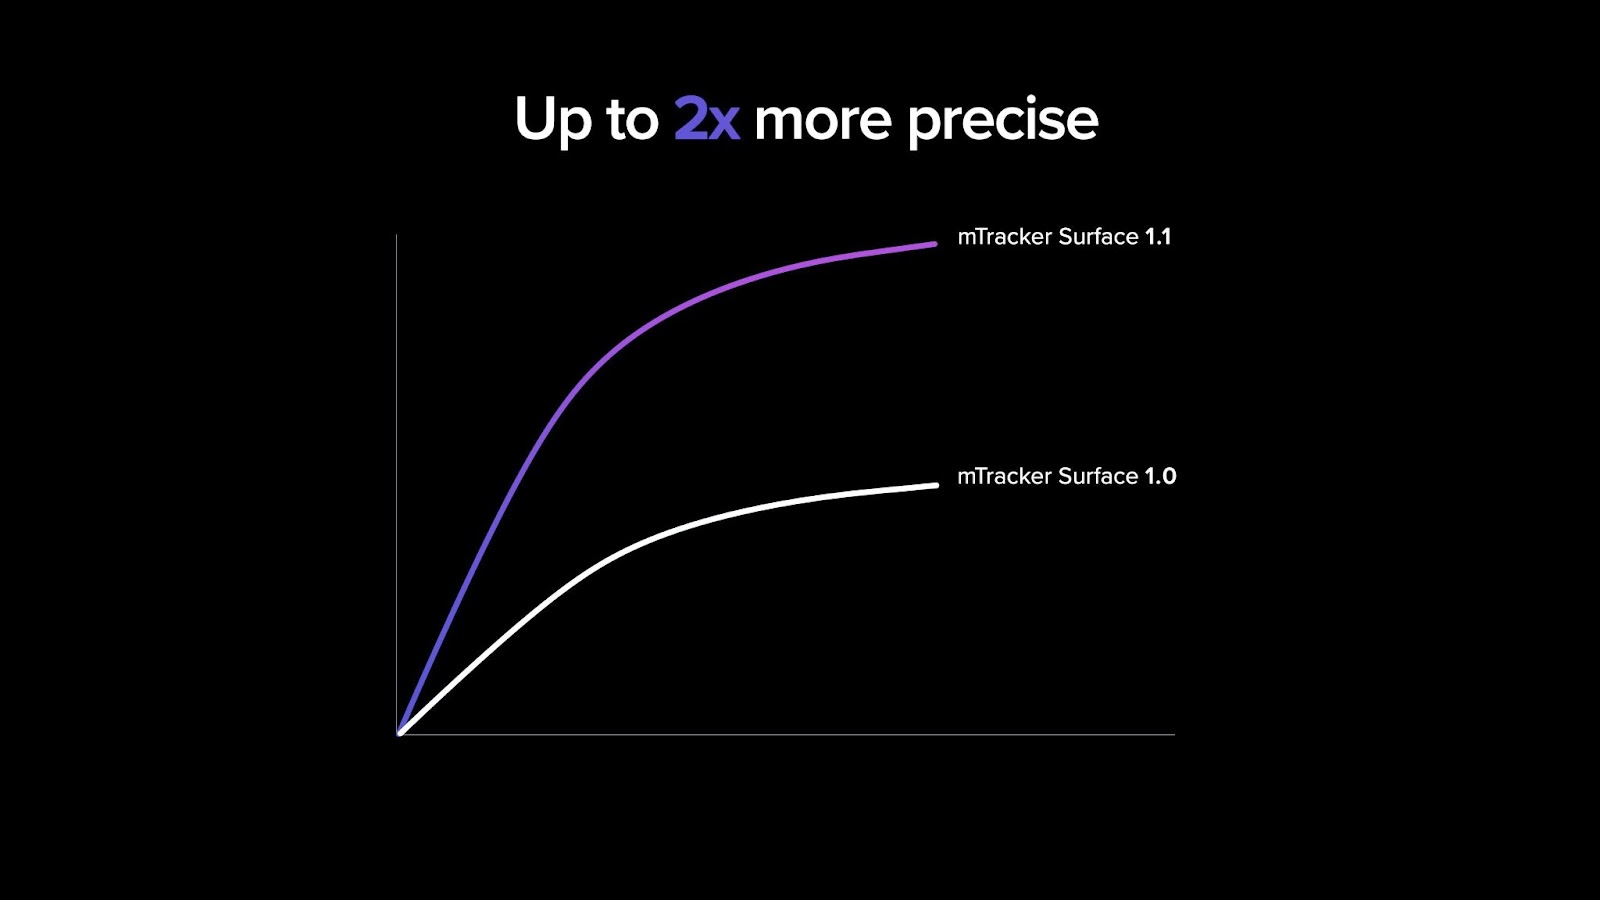 Making the best even better! Meet mTracker Surface 1.1